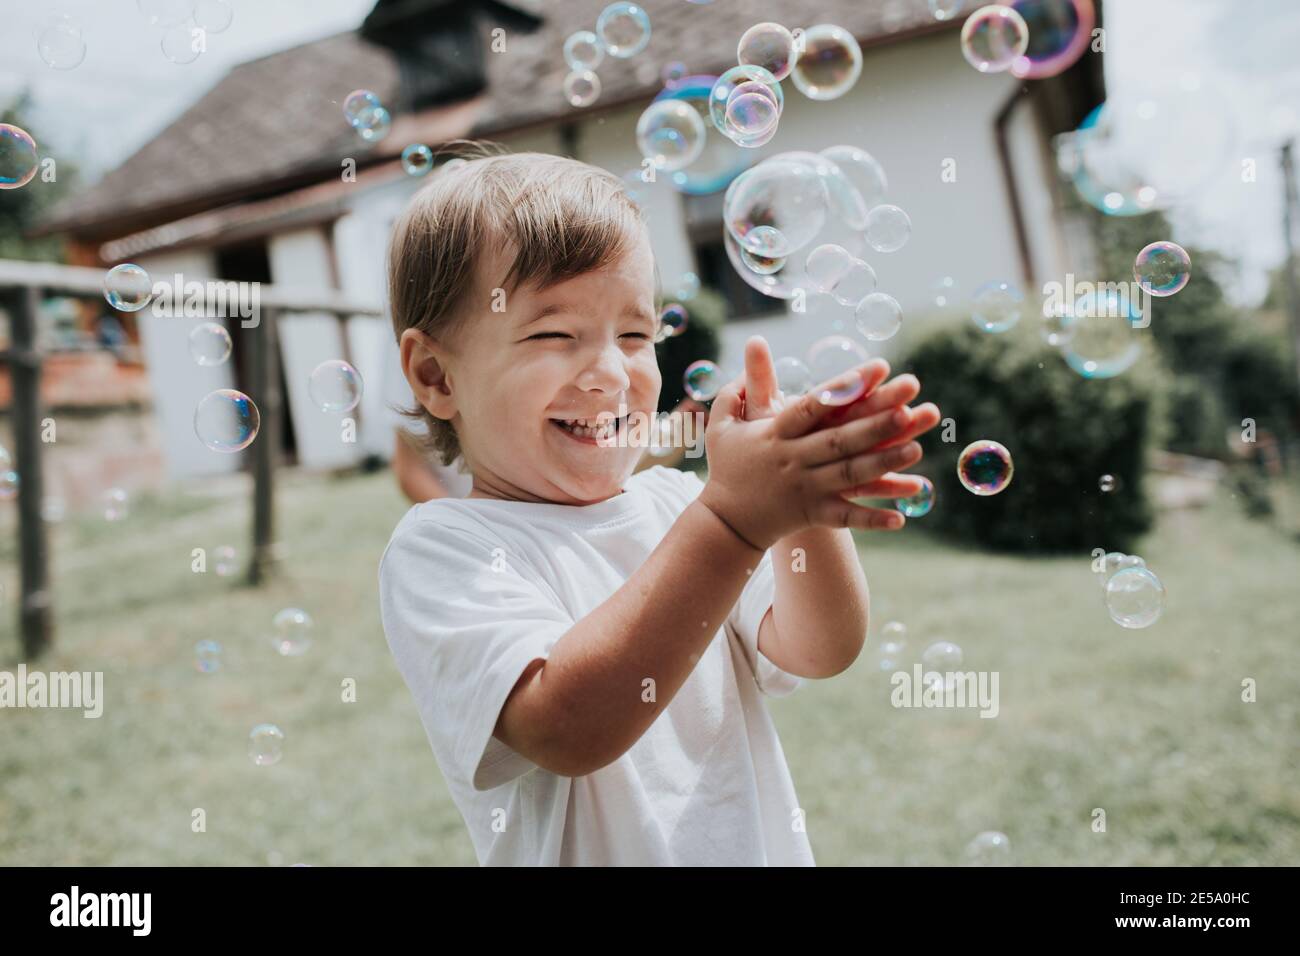 Un enfant heureux qui craque des bulles de savon. Un jeune enfant excités qui a éclaté des bulles de savon dehors dans un jardin pendant une journée d'été. Banque D'Images